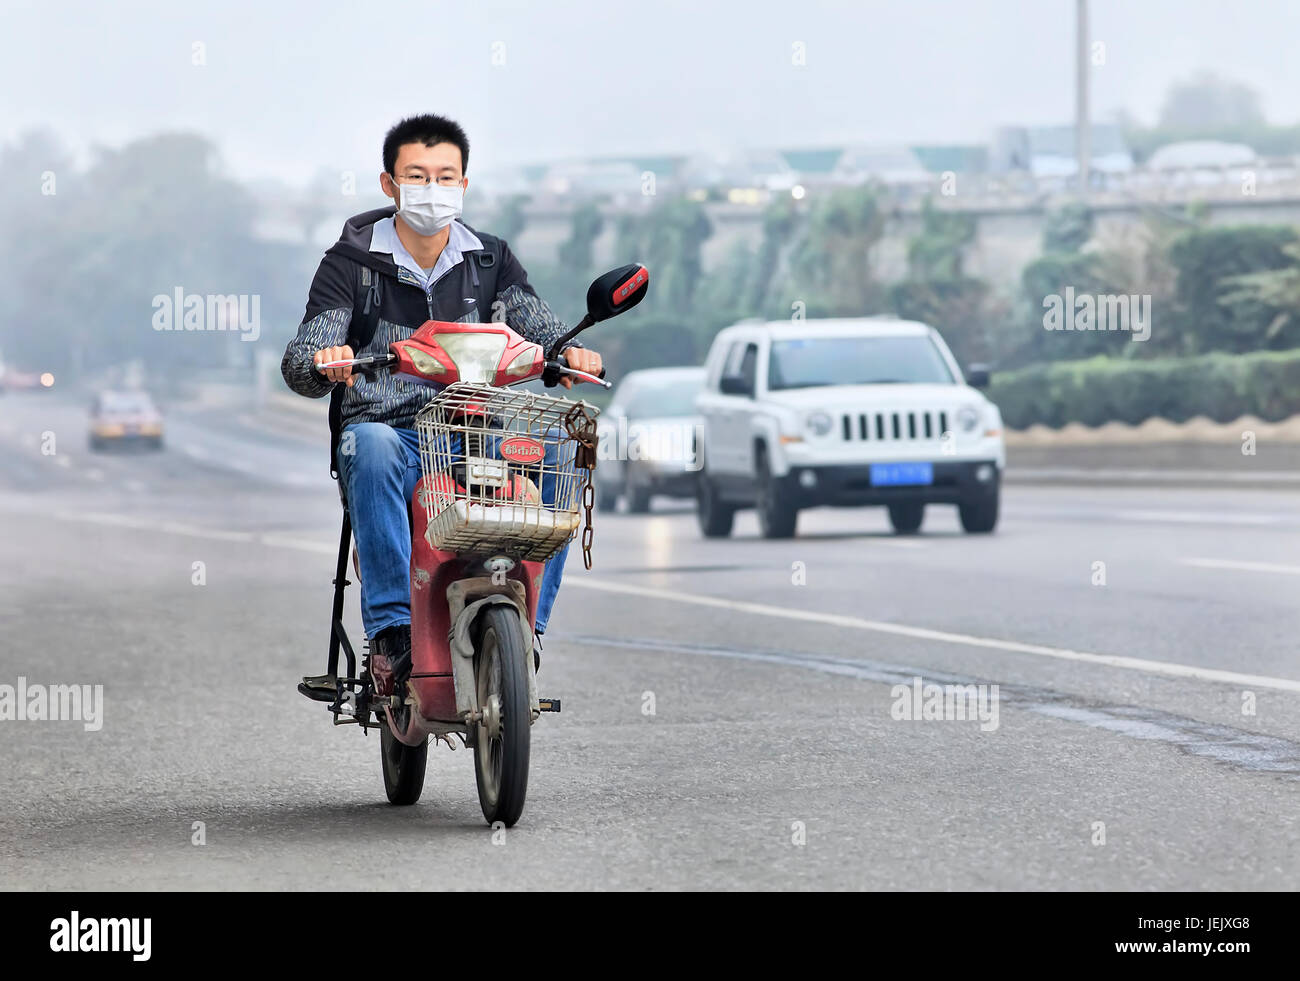 PEKING - OKT. 6. Der junge Mann auf einem E-Bike bedeckt seinen Mund gegen Smog. Die Überwachung der US-Botschaft zeigte, dass die Luft in Peking sehr ungesund war. Stockfoto